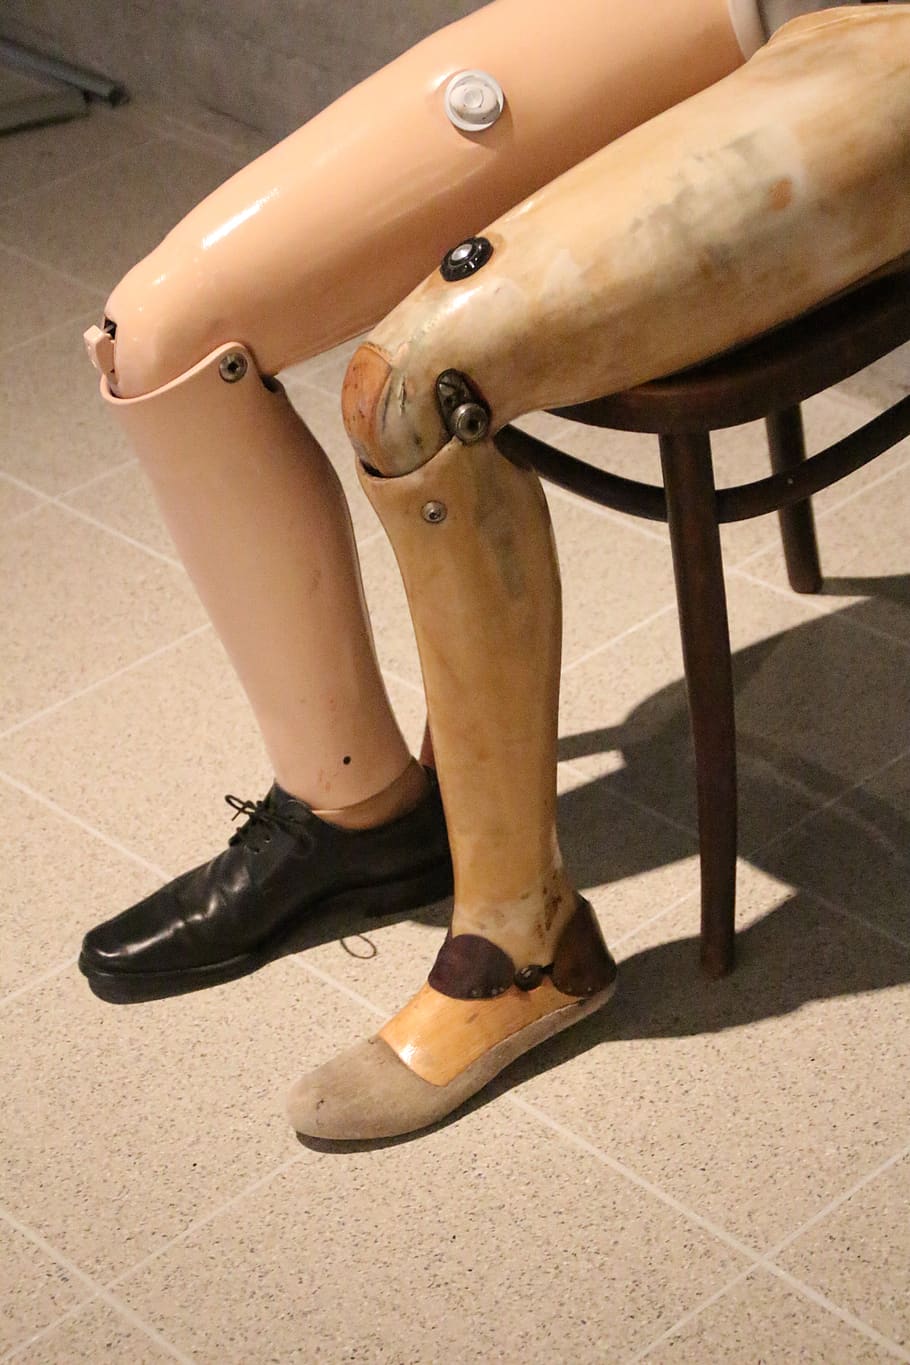 prótesis, extremidad artificial, pierna, pierna falsa, médico, lesión, extremidad, zapato, sección baja, pierna humana